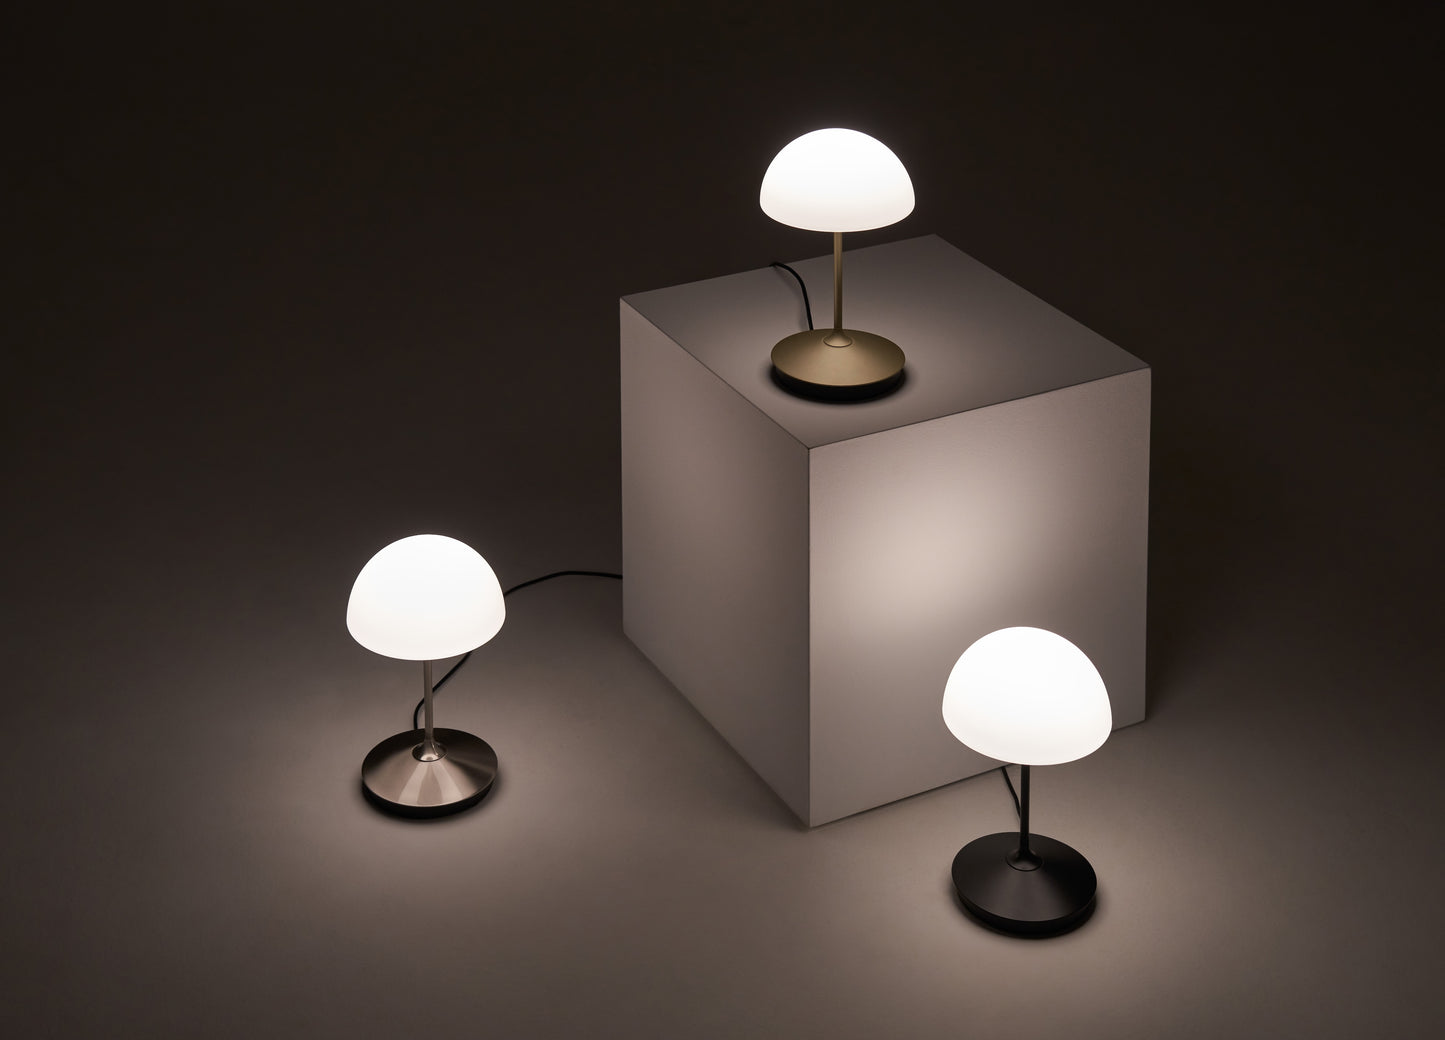 Seed Design Pensee LED Table Lamp Black